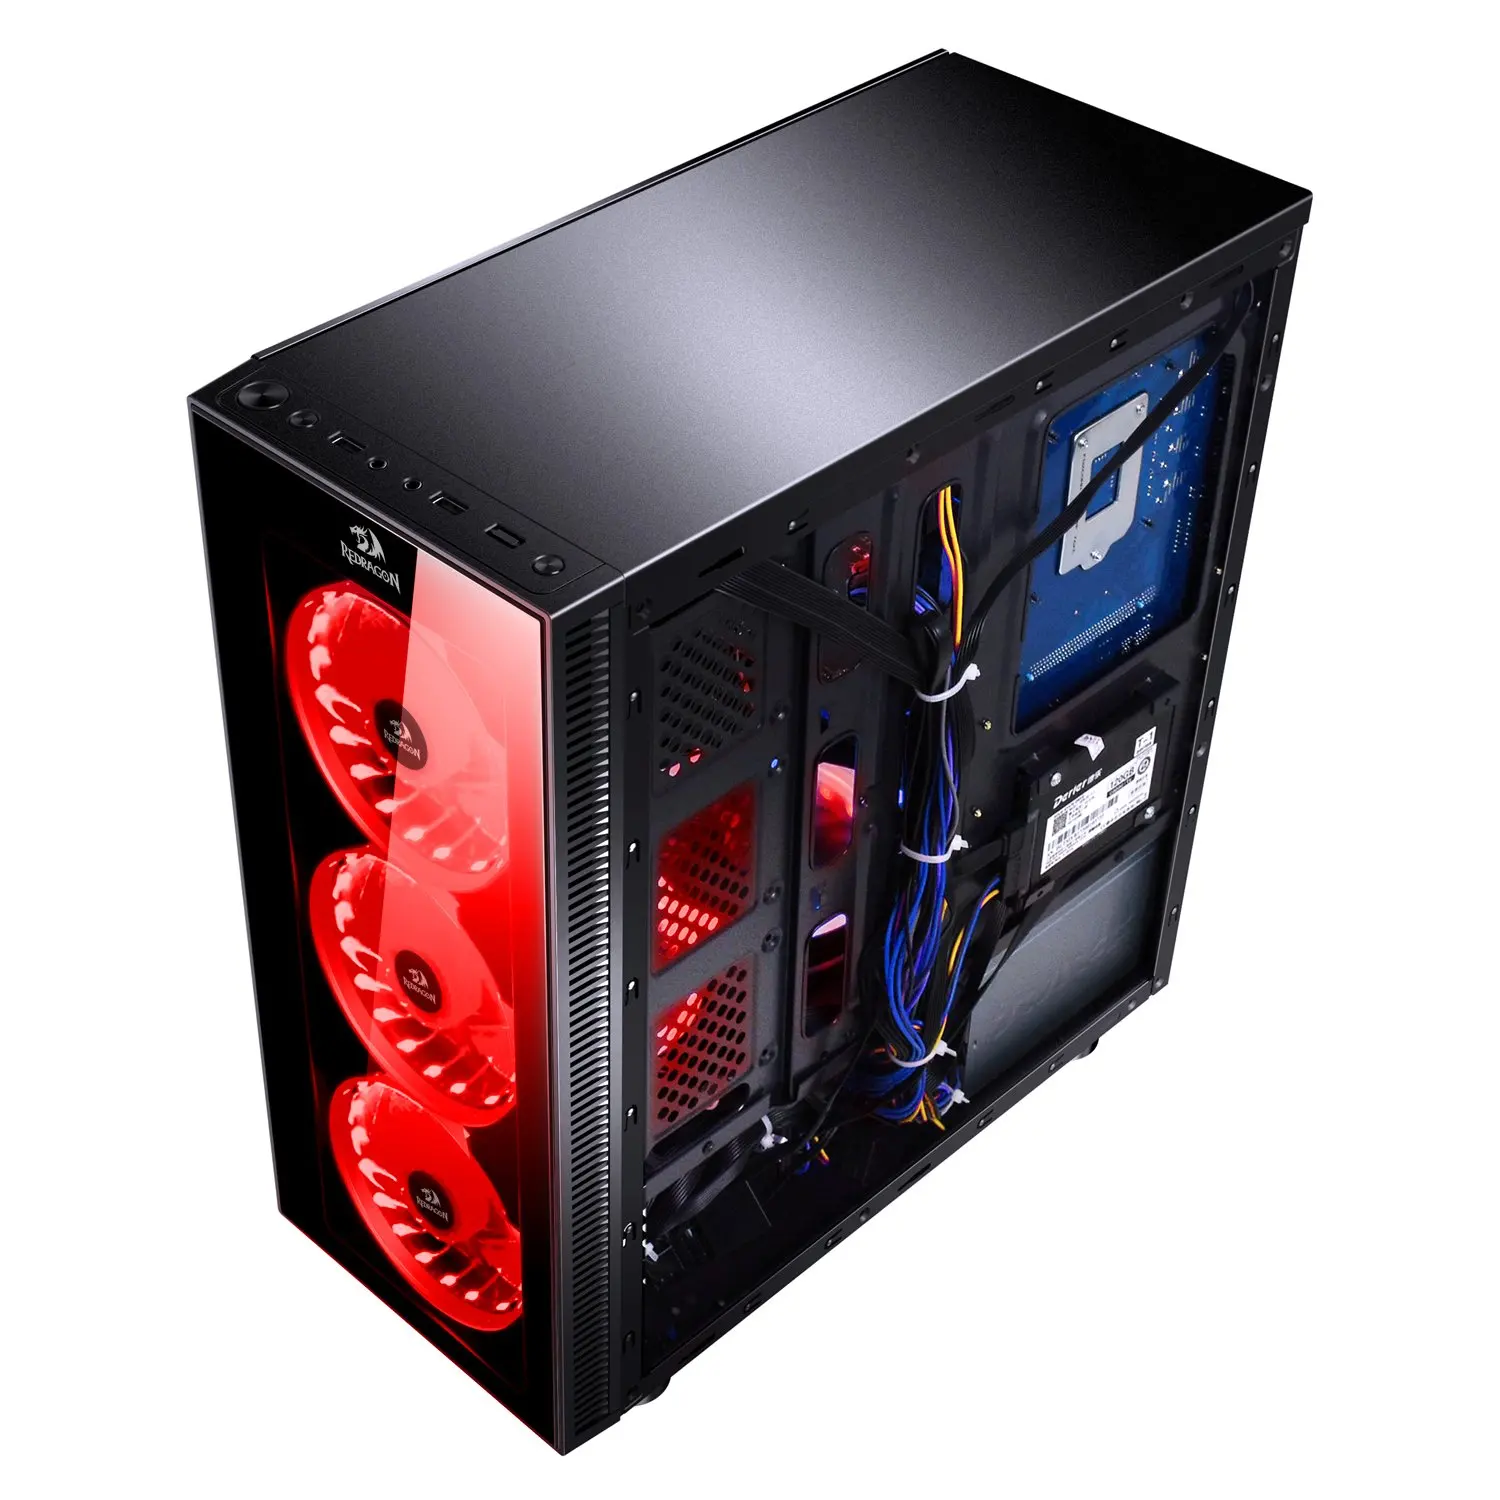 Caja modding Dragón de XG box para pc, aluminio de color rojo